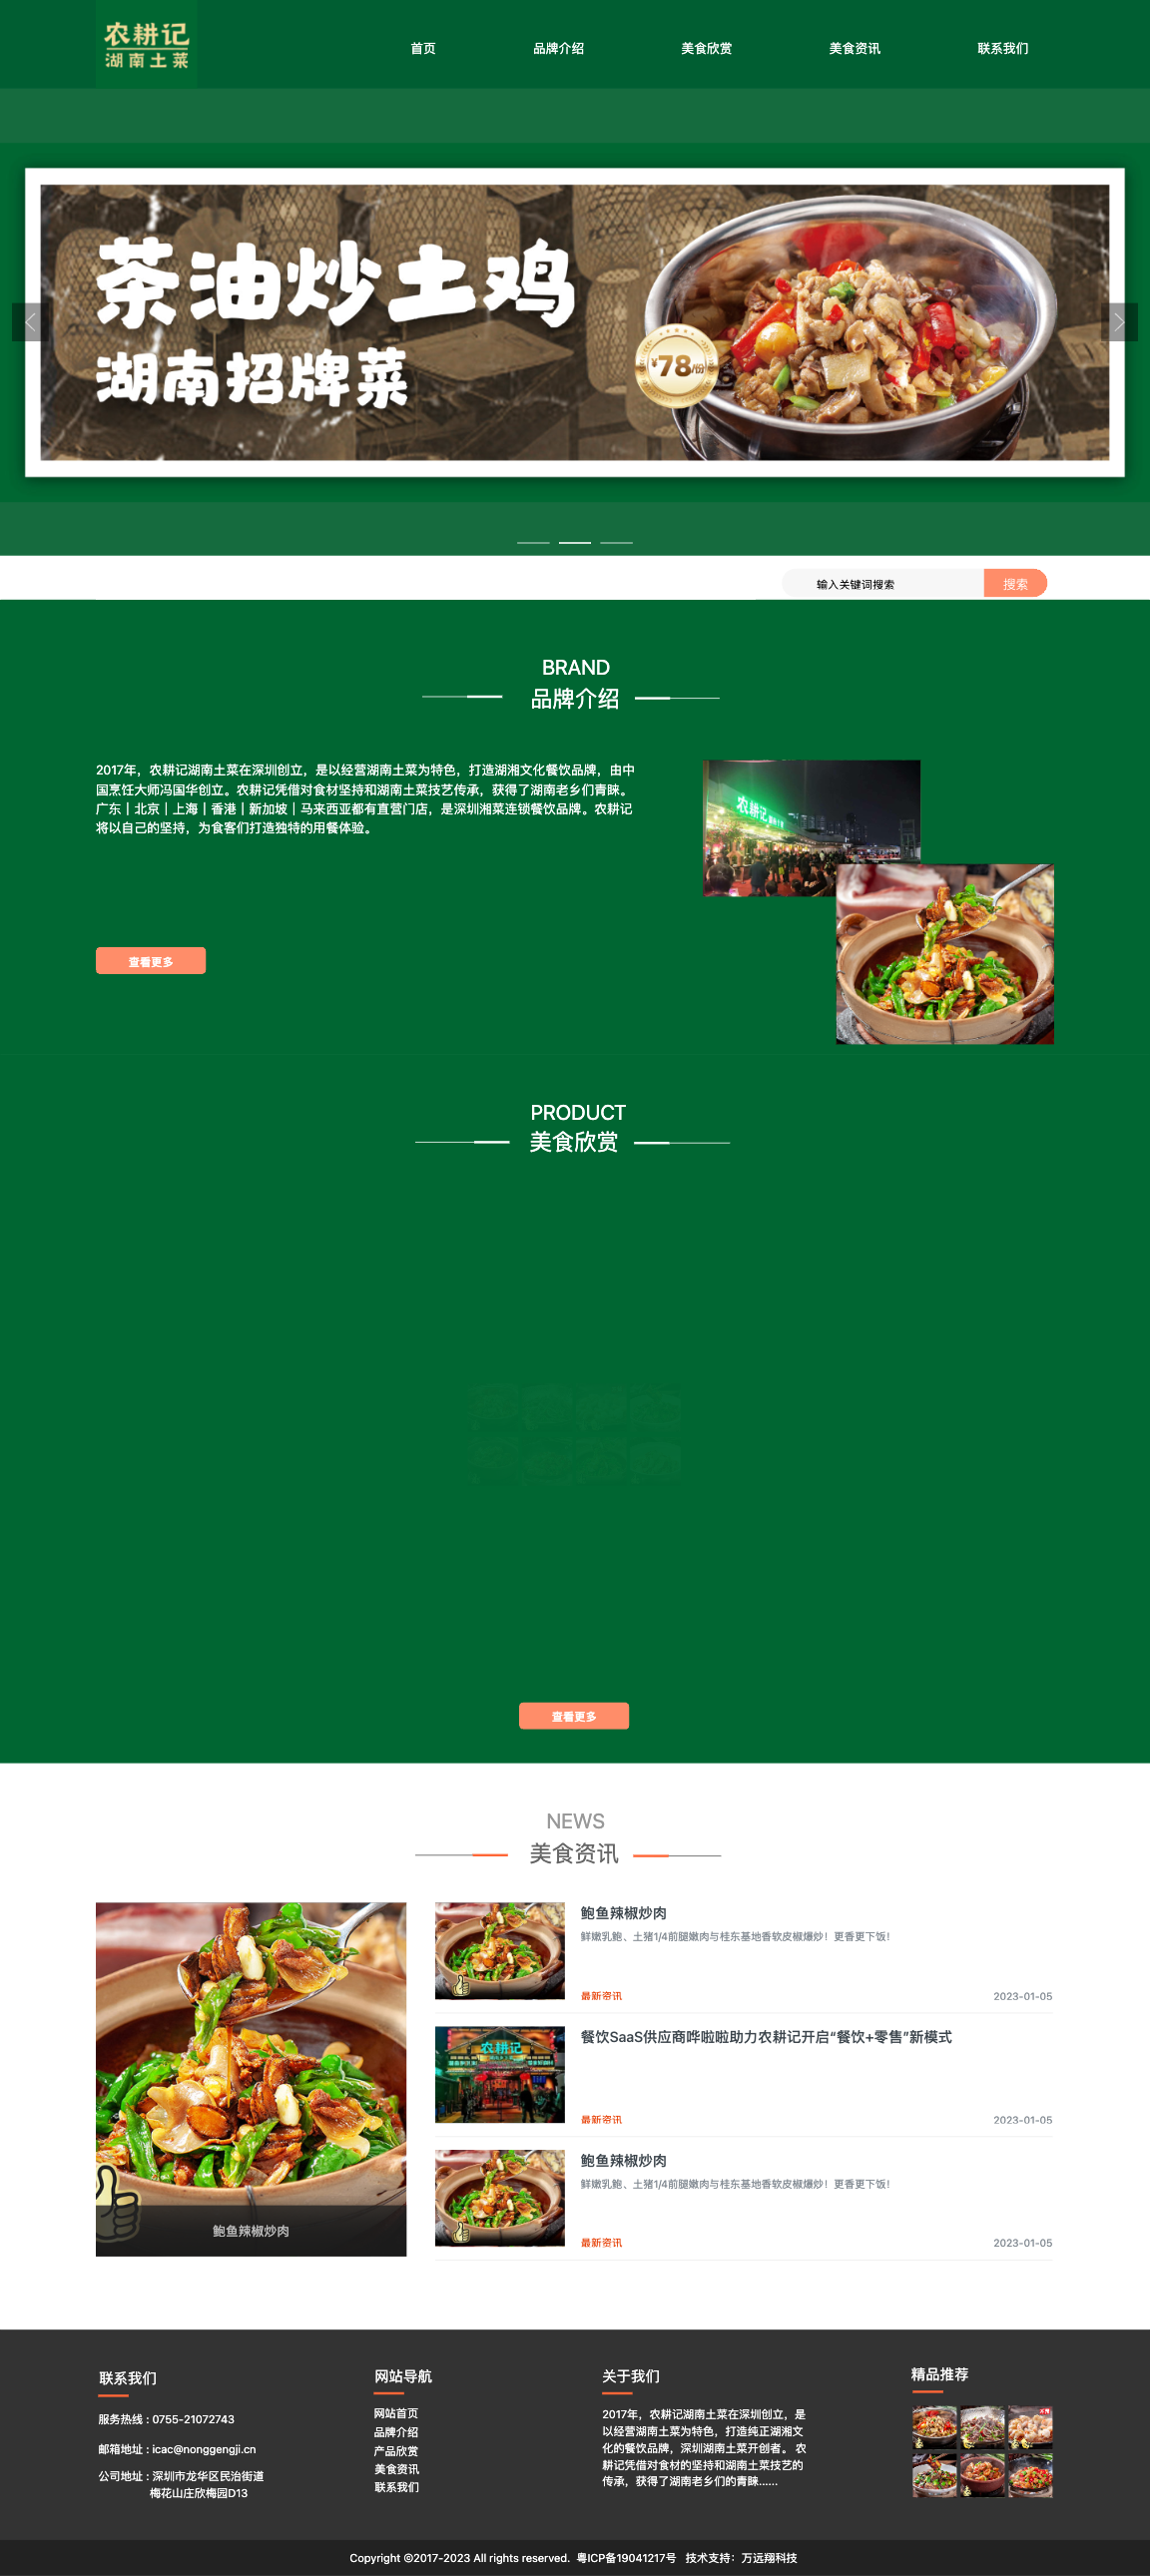 深圳市农耕记餐饮有限公司-全网门户展示版案例展示